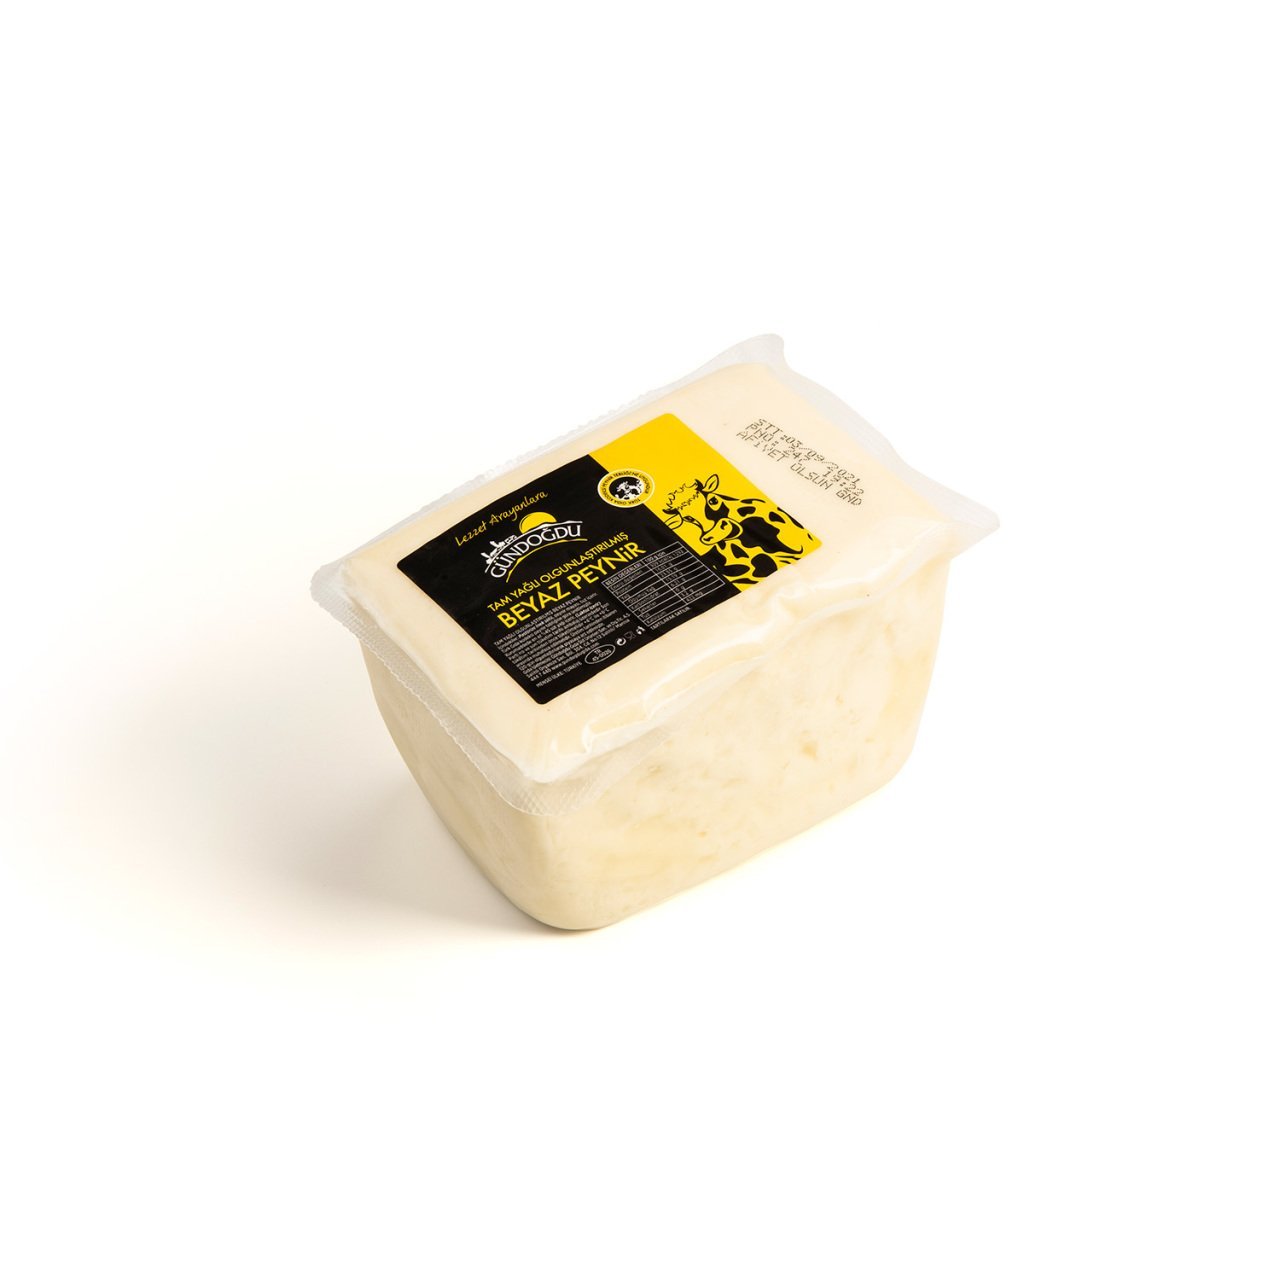 Gündoğdu İnek Beyaz Peyniri 3 lü paket Yaklaşık 1,980 KG 1 Yıl Olgunlaştırılmış